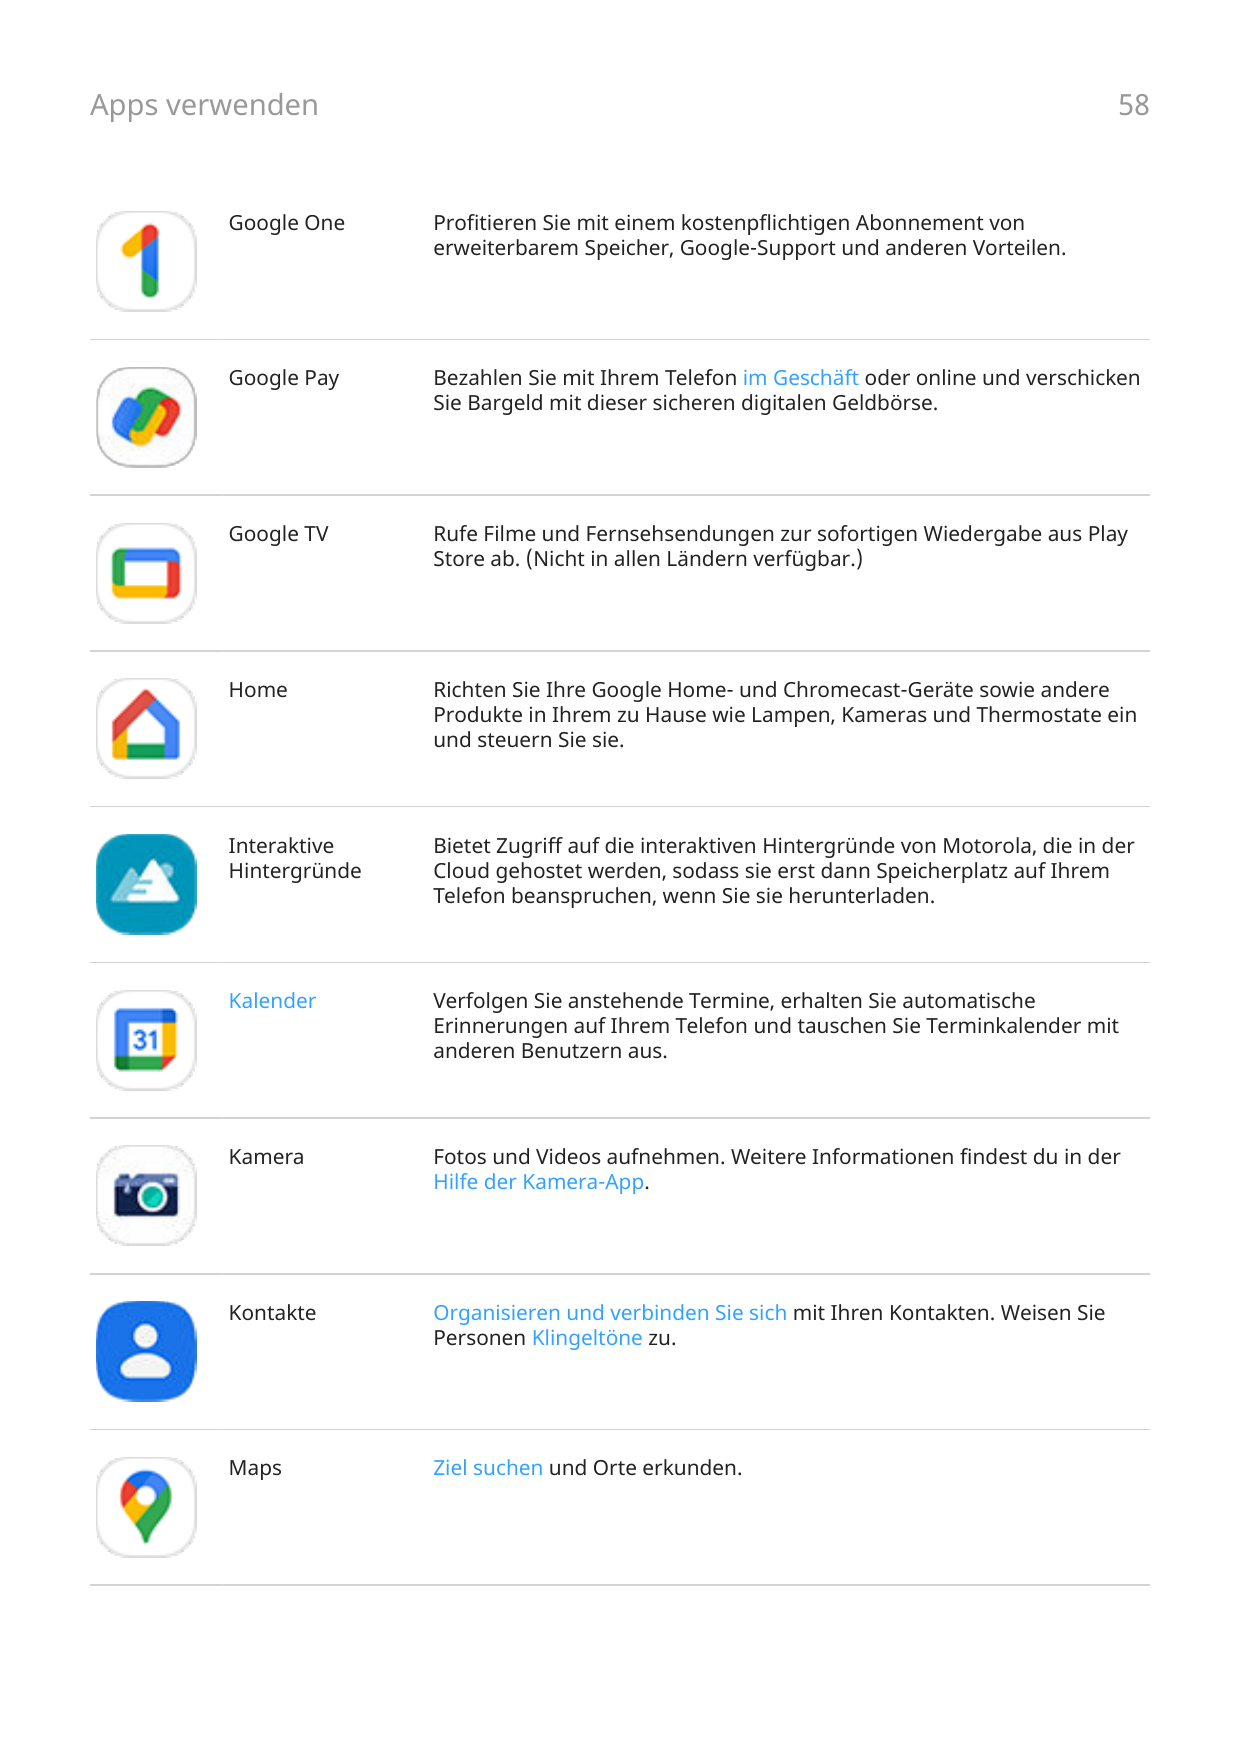 Apps verwenden58Google OneProfitieren Sie mit einem kostenpflichtigen Abonnement vonerweiterbarem Speicher, Google-Support und a